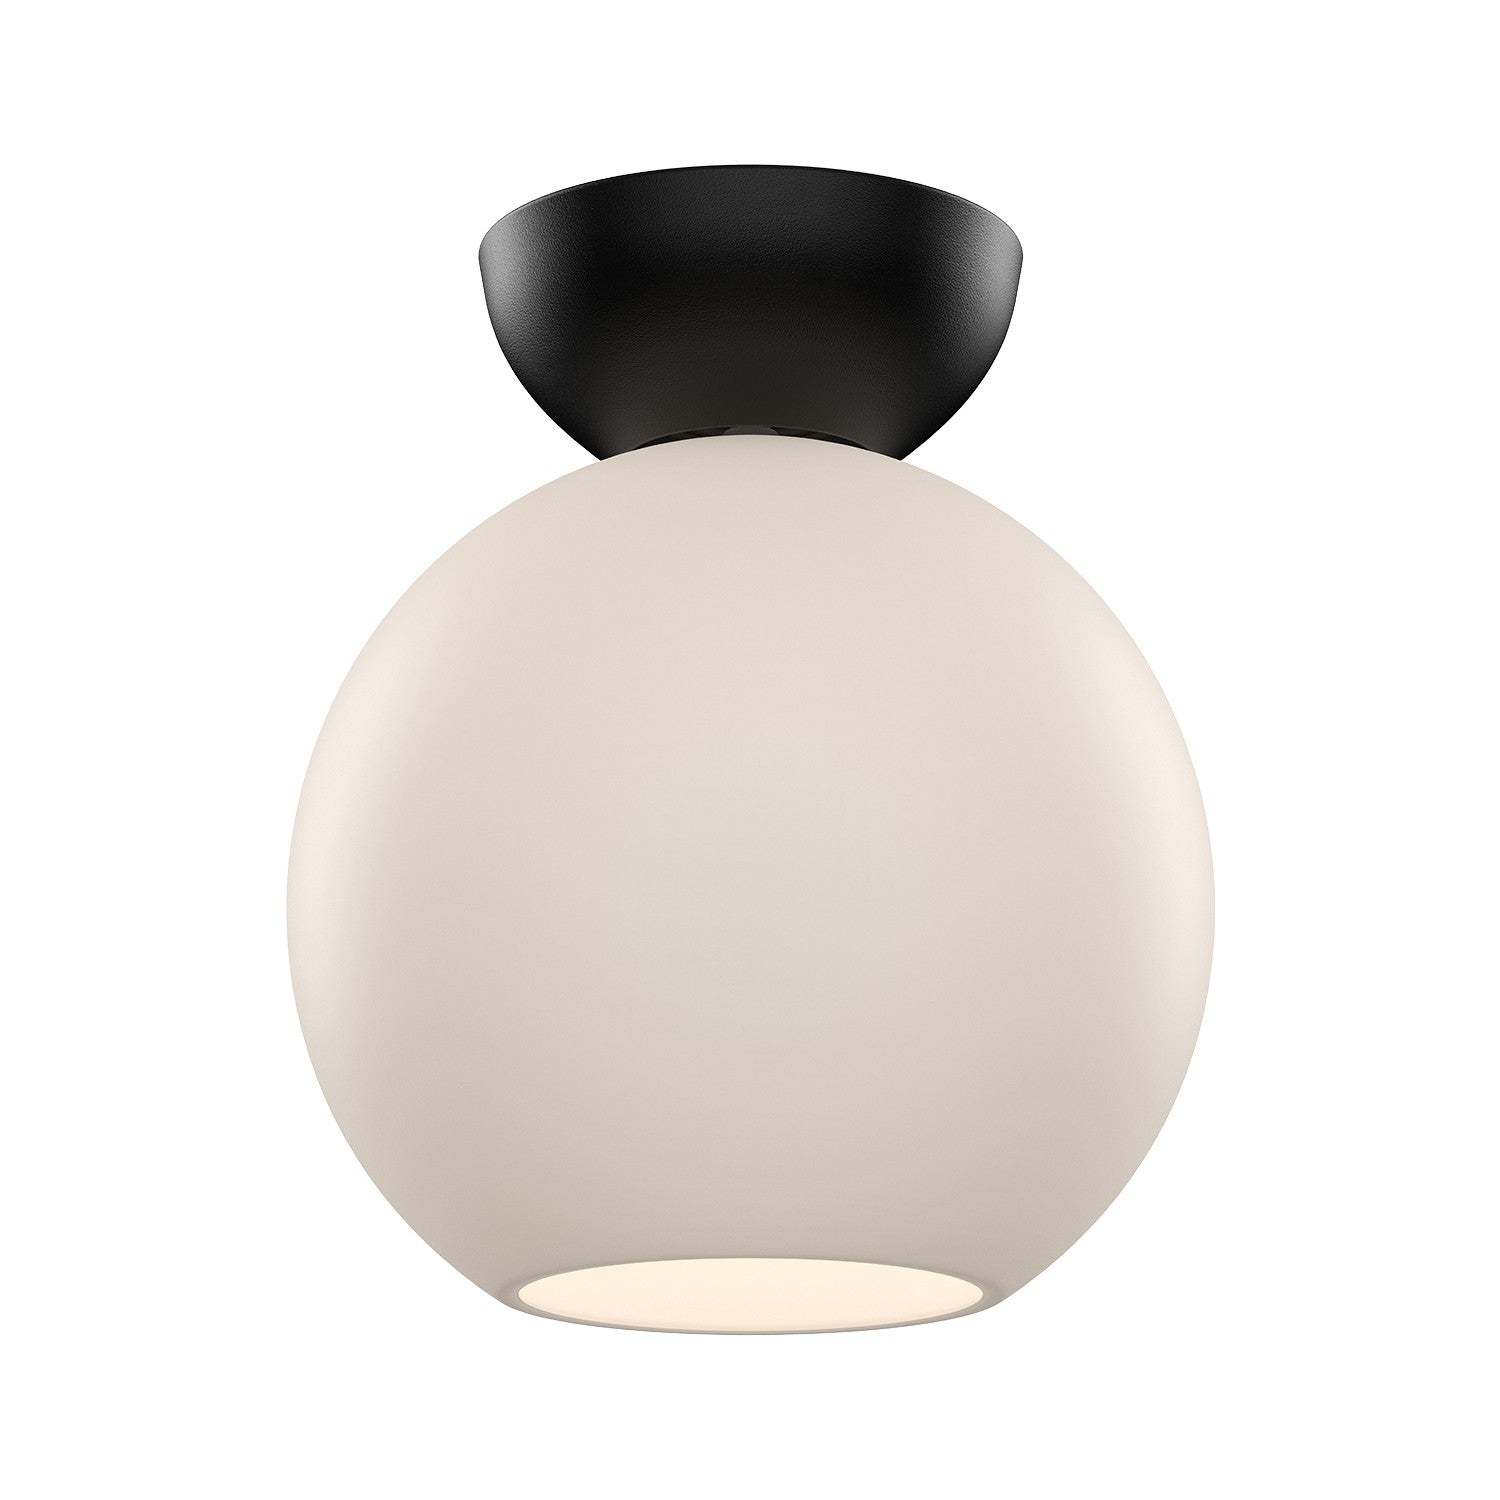 Kuzco Lighting - SF59708-BK/OP - One Light Semi-Flush Mount - Arcadia - Black/Opal Glass